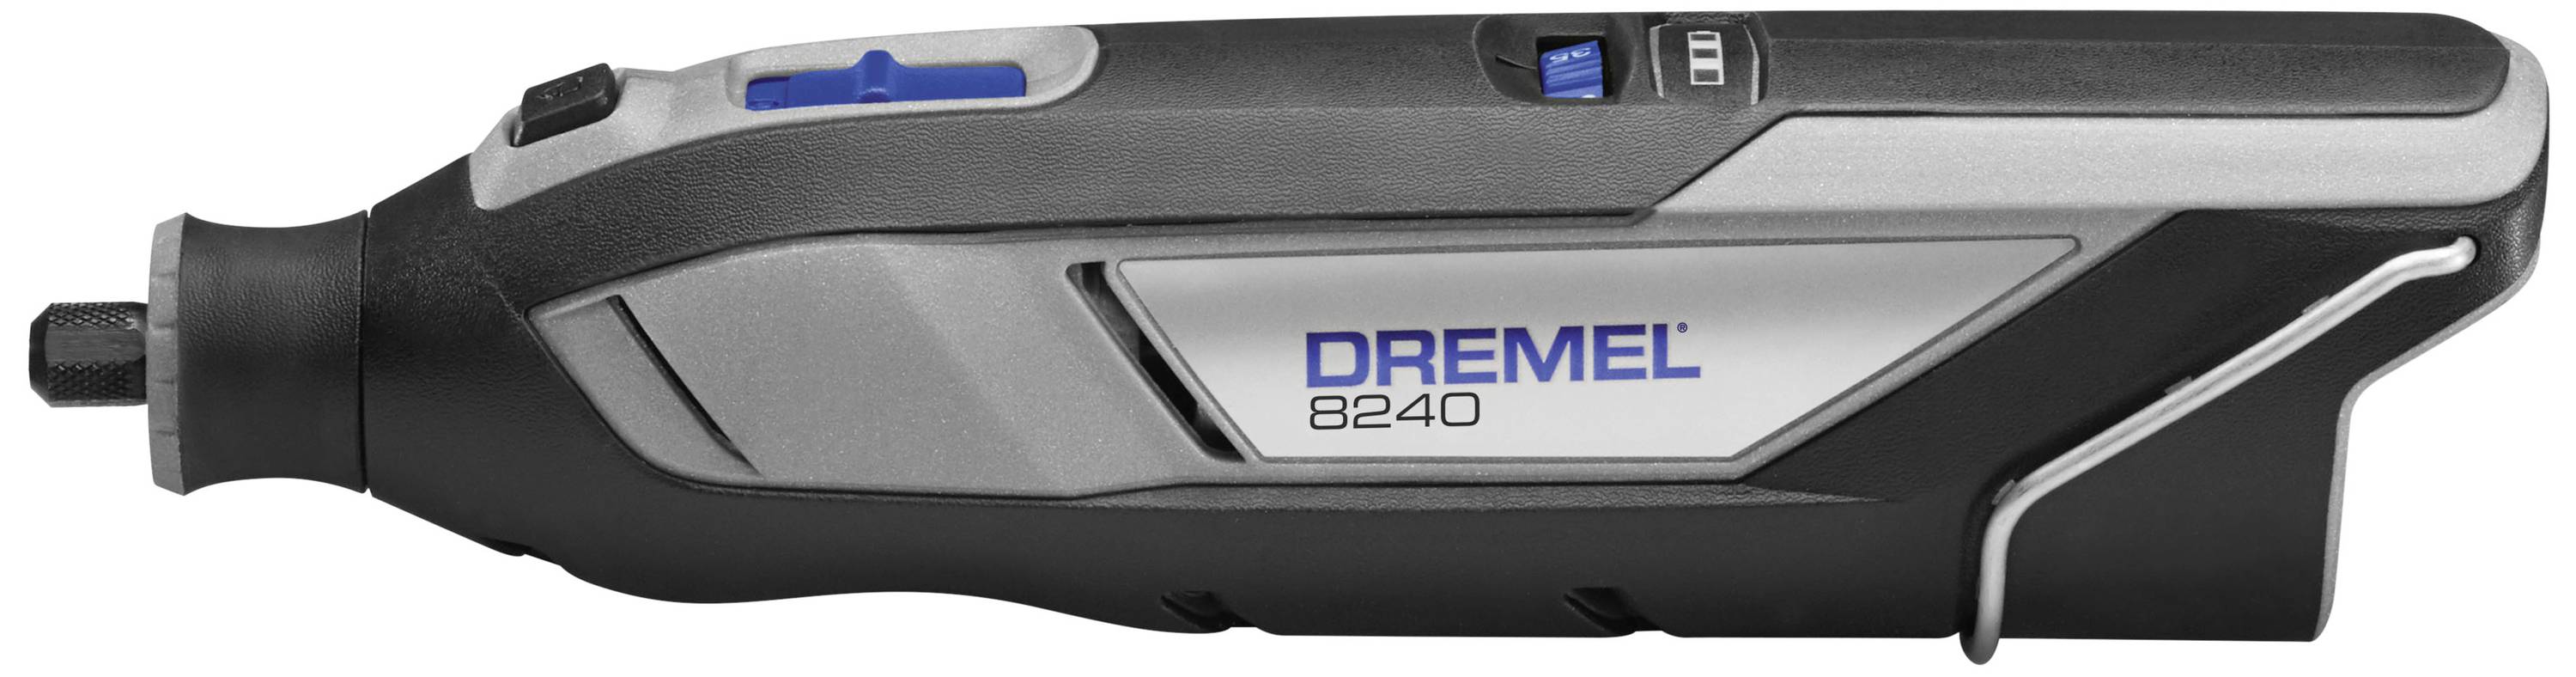 Dremel 8240-5 F0138240JA Outil multifonction sans fil + batterie, +  chargeur, + accessoires 12 V 2.0 Ah - Conrad Electronic France